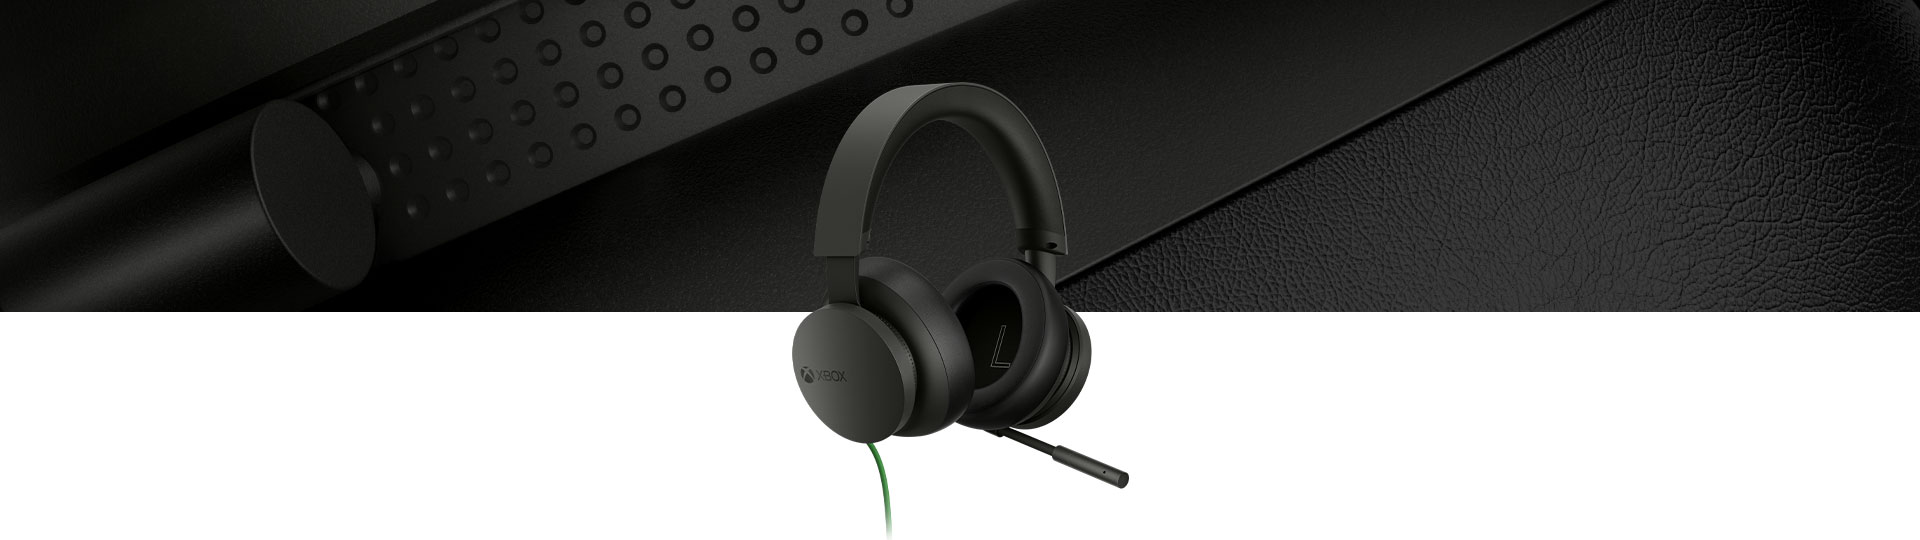 Στερεοφωνικά ακουστικά Xbox με κοντινή όψη των ακουστικών στο φόντο